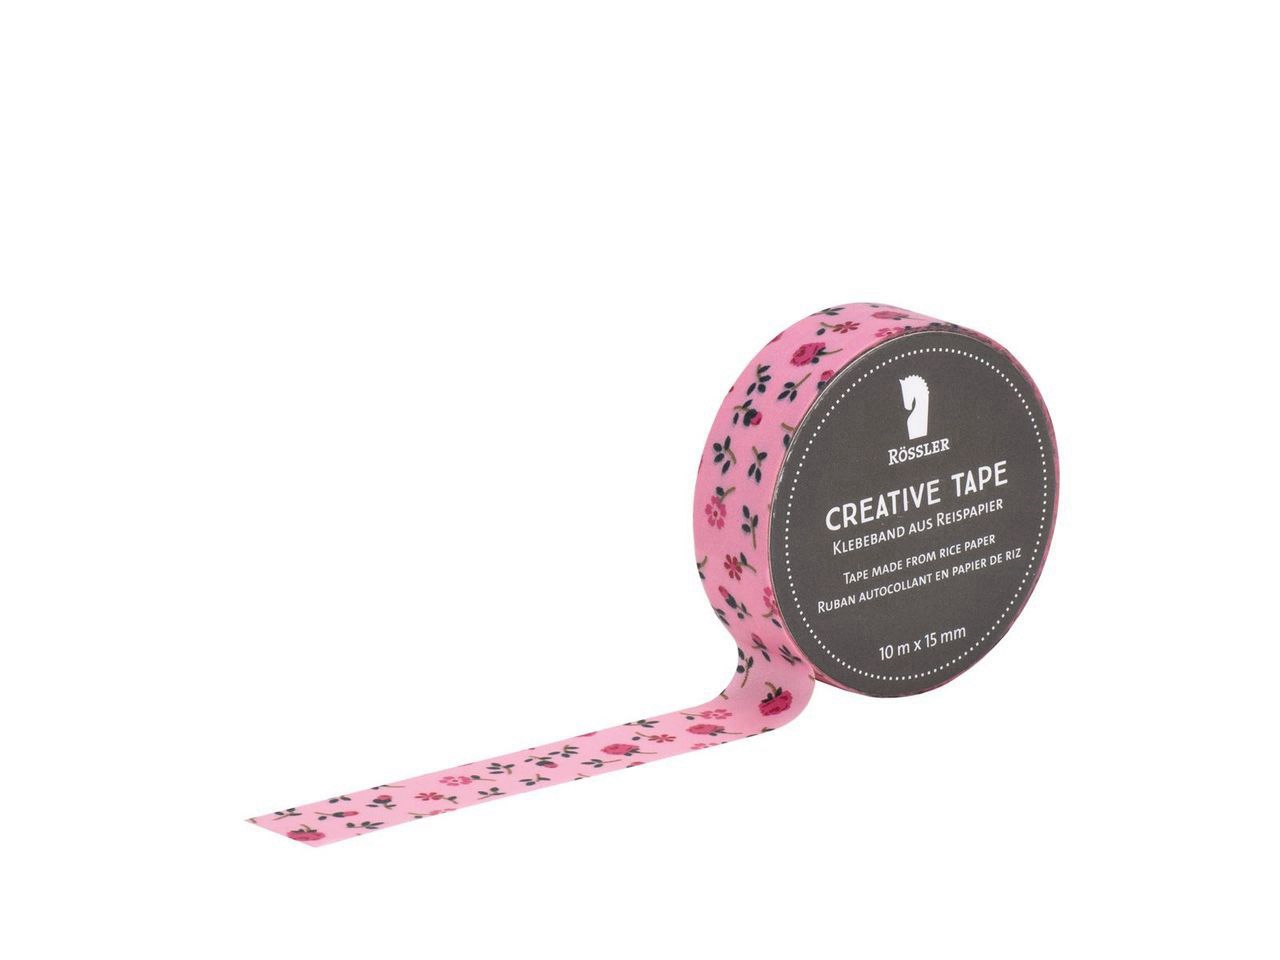 Creative Tape adesivo - Rose su sfondo rosa